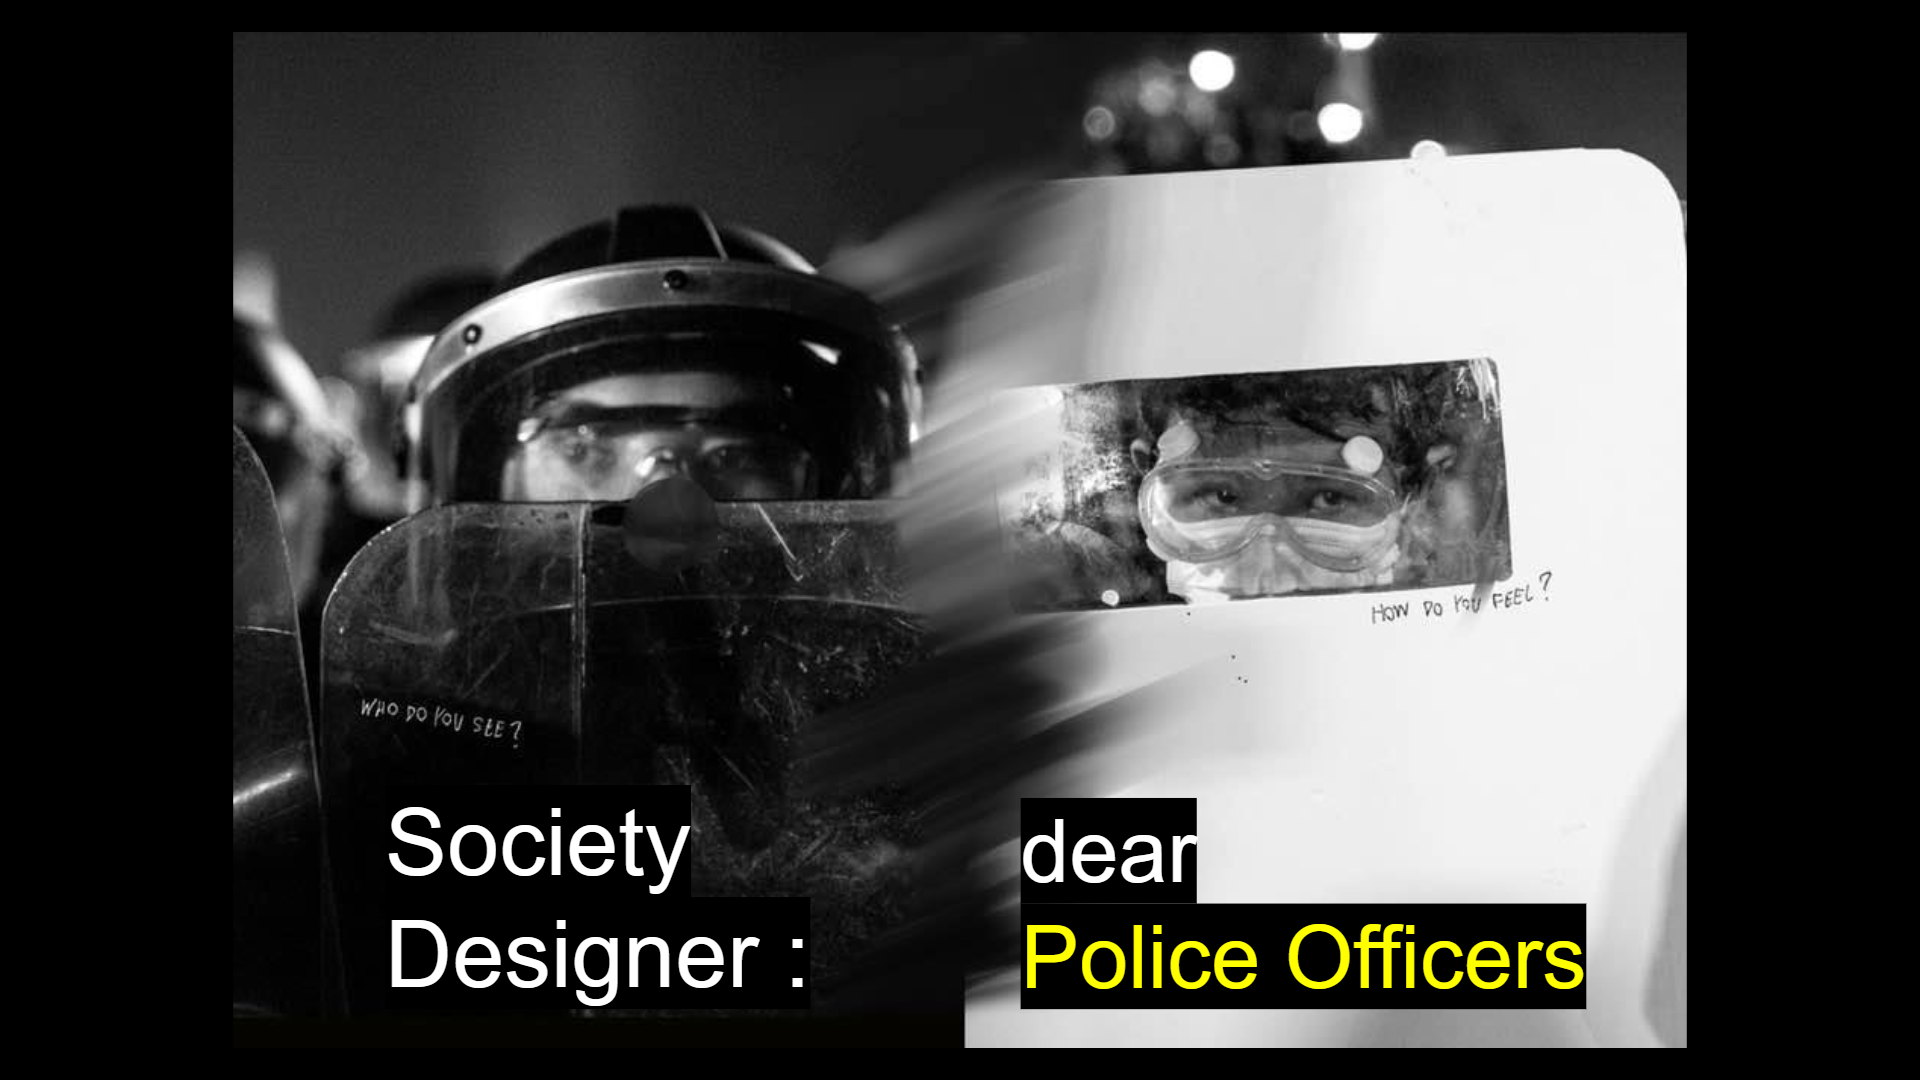 ภาพประกอบไอเดีย Society Designer: Dear Police Officers 